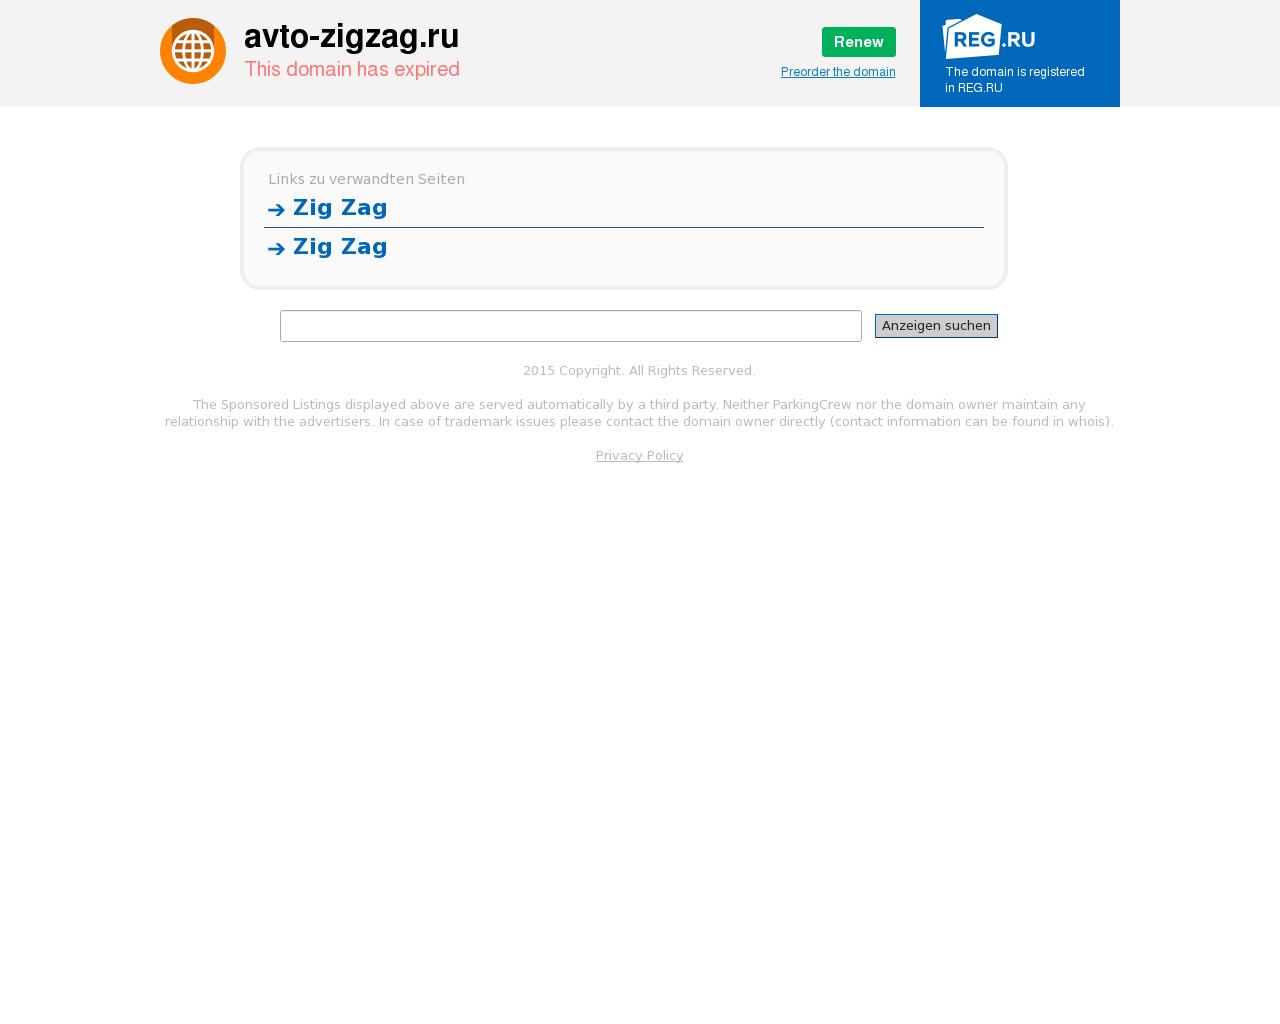 Изображение сайта avto-zigzag.ru в разрешении 1280x1024